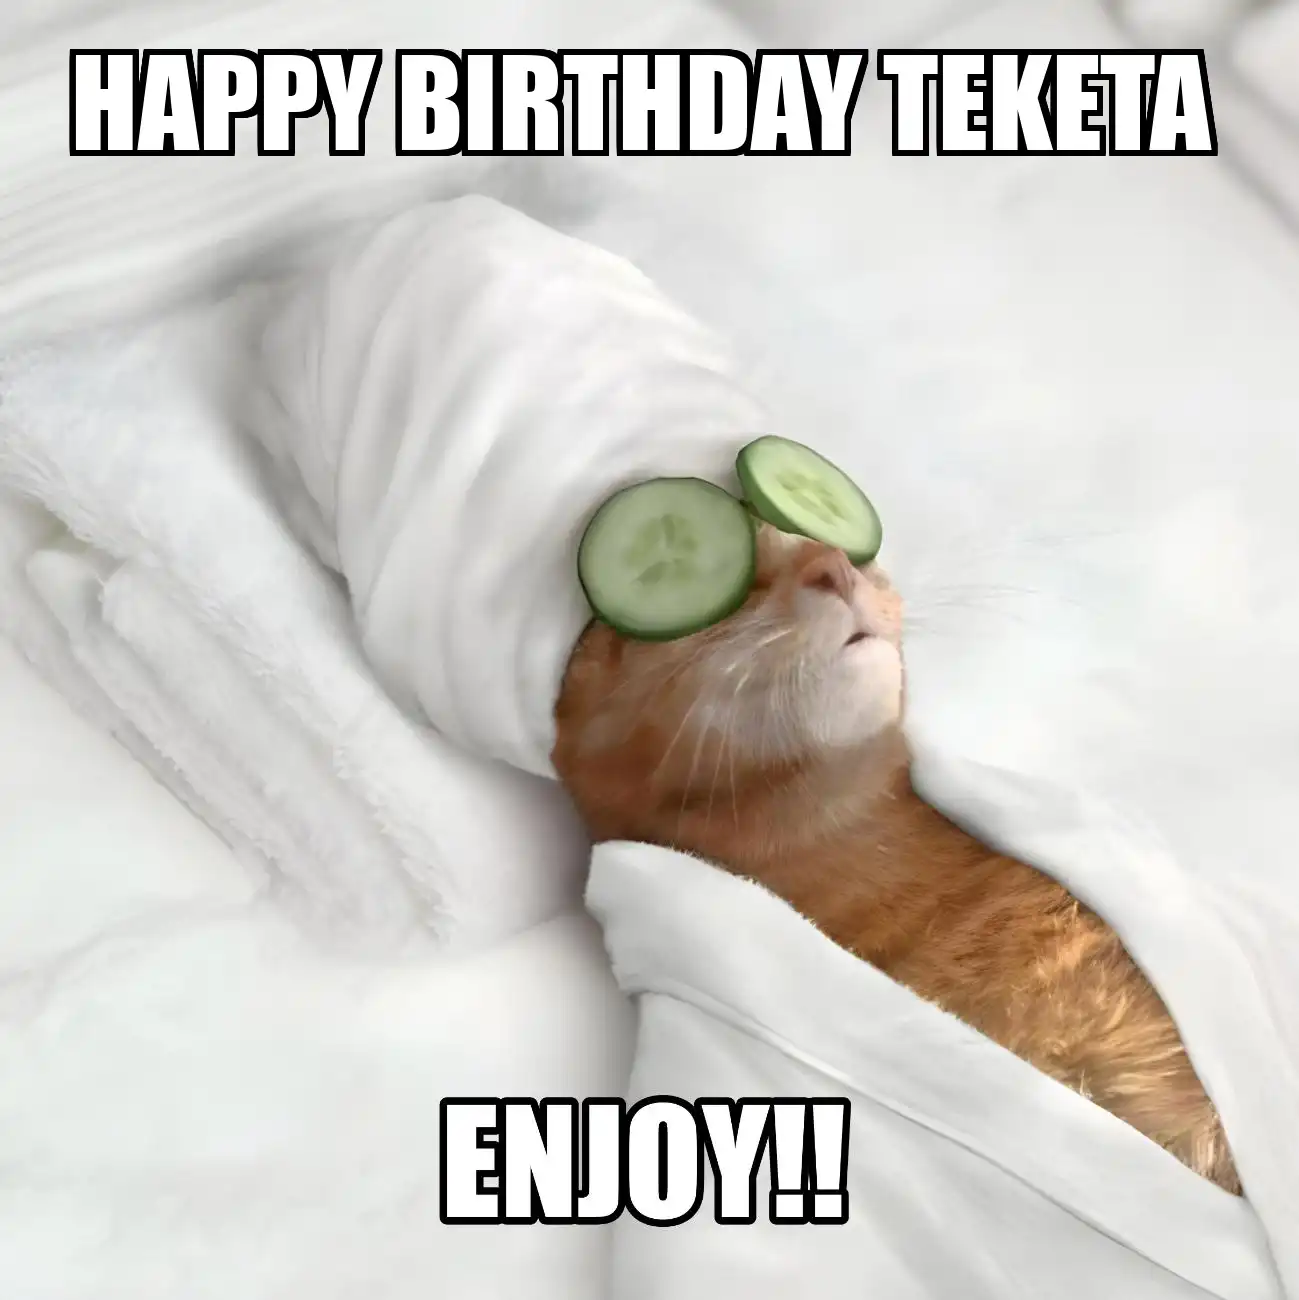 Happy Birthday Teketa Enjoy Cat Meme